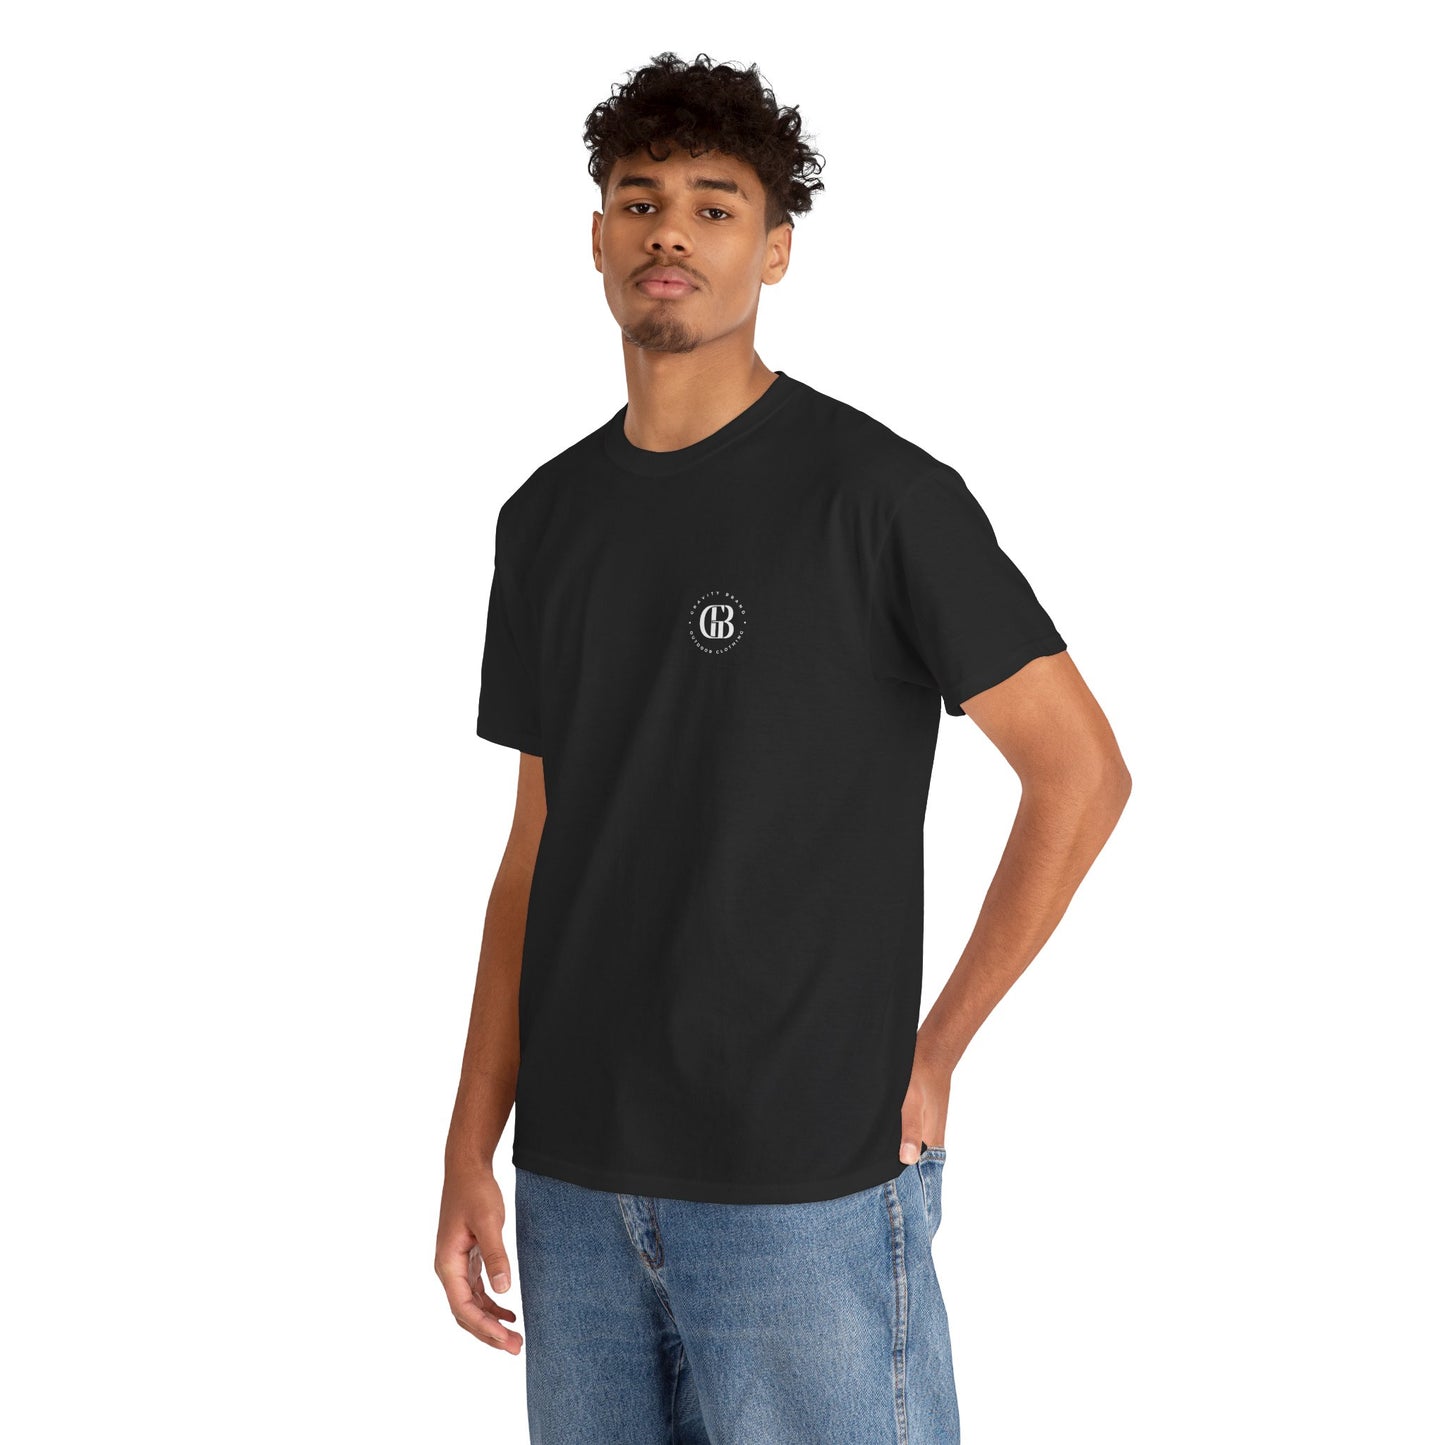 SLEEK TEE | Camiseta de algodón 100% - Unisex